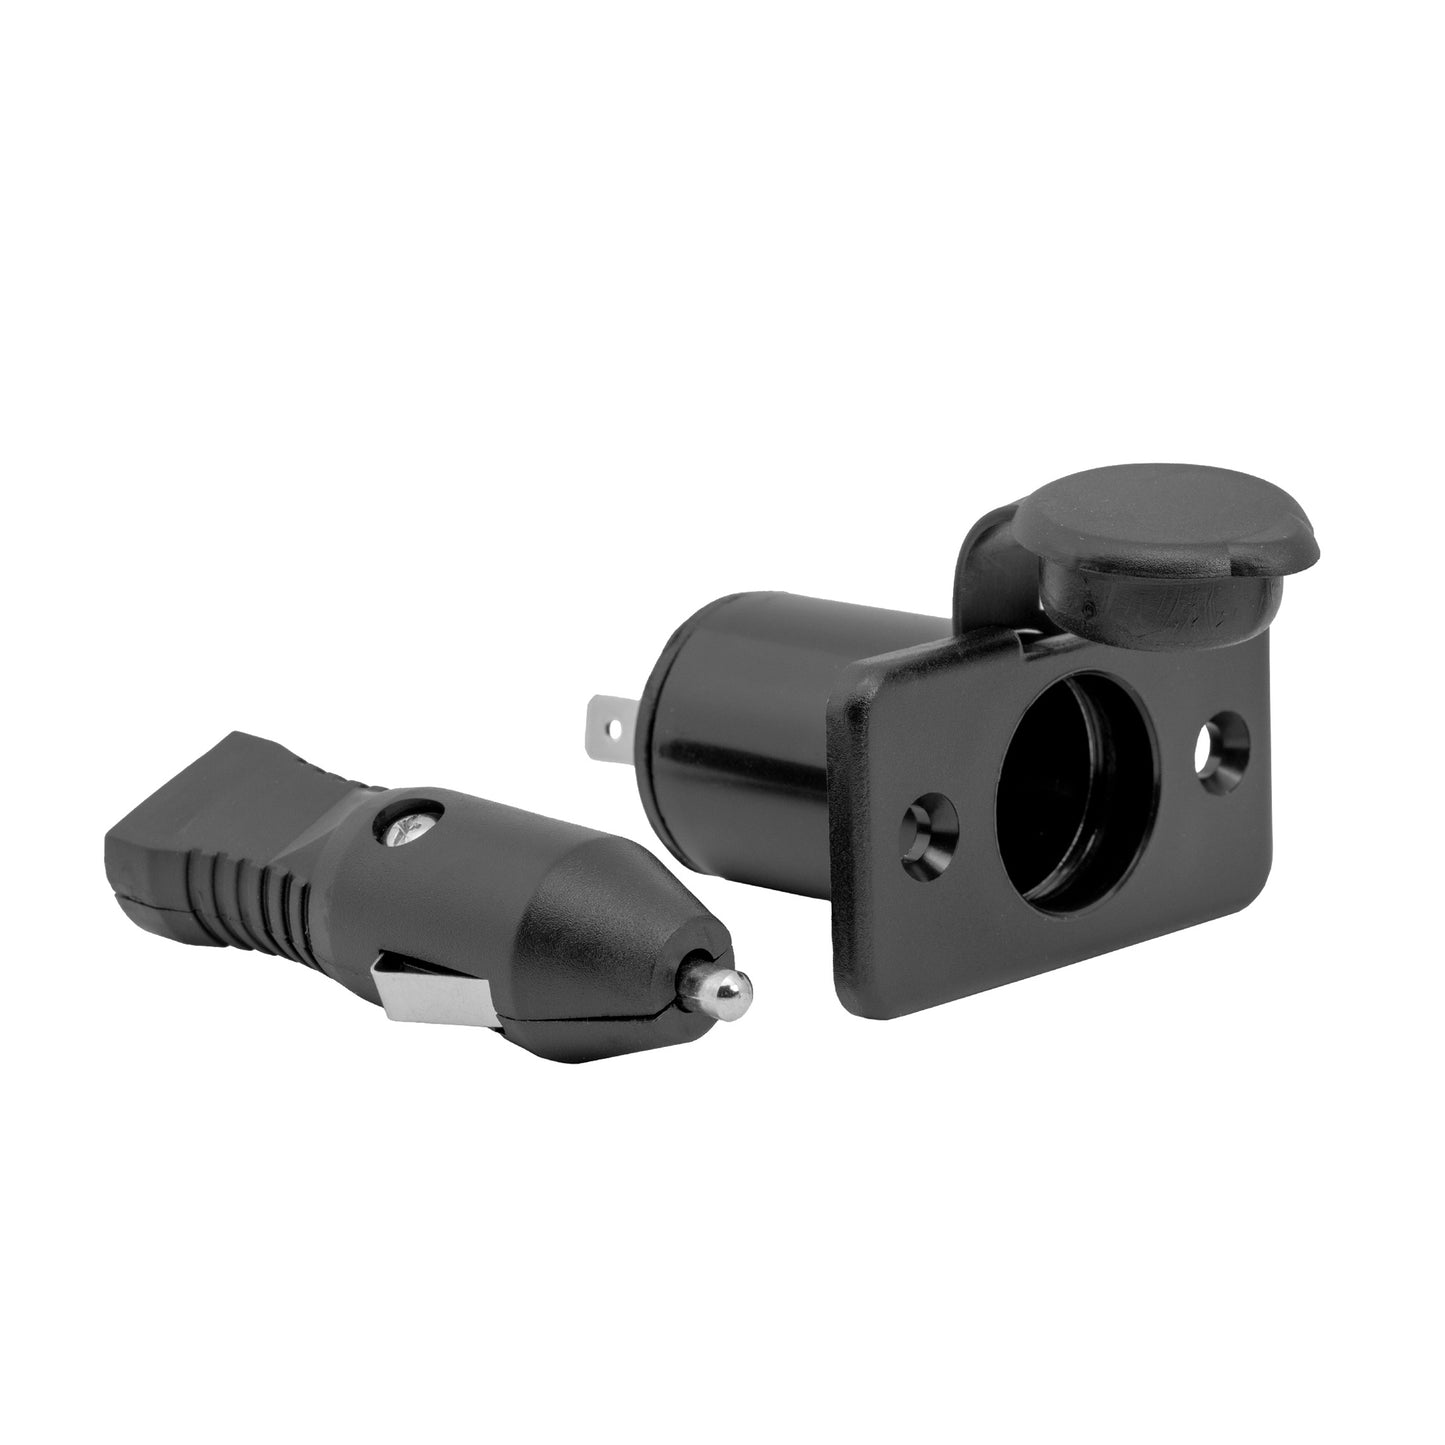 12V Adapter Plug & Receptacle w/ Cap